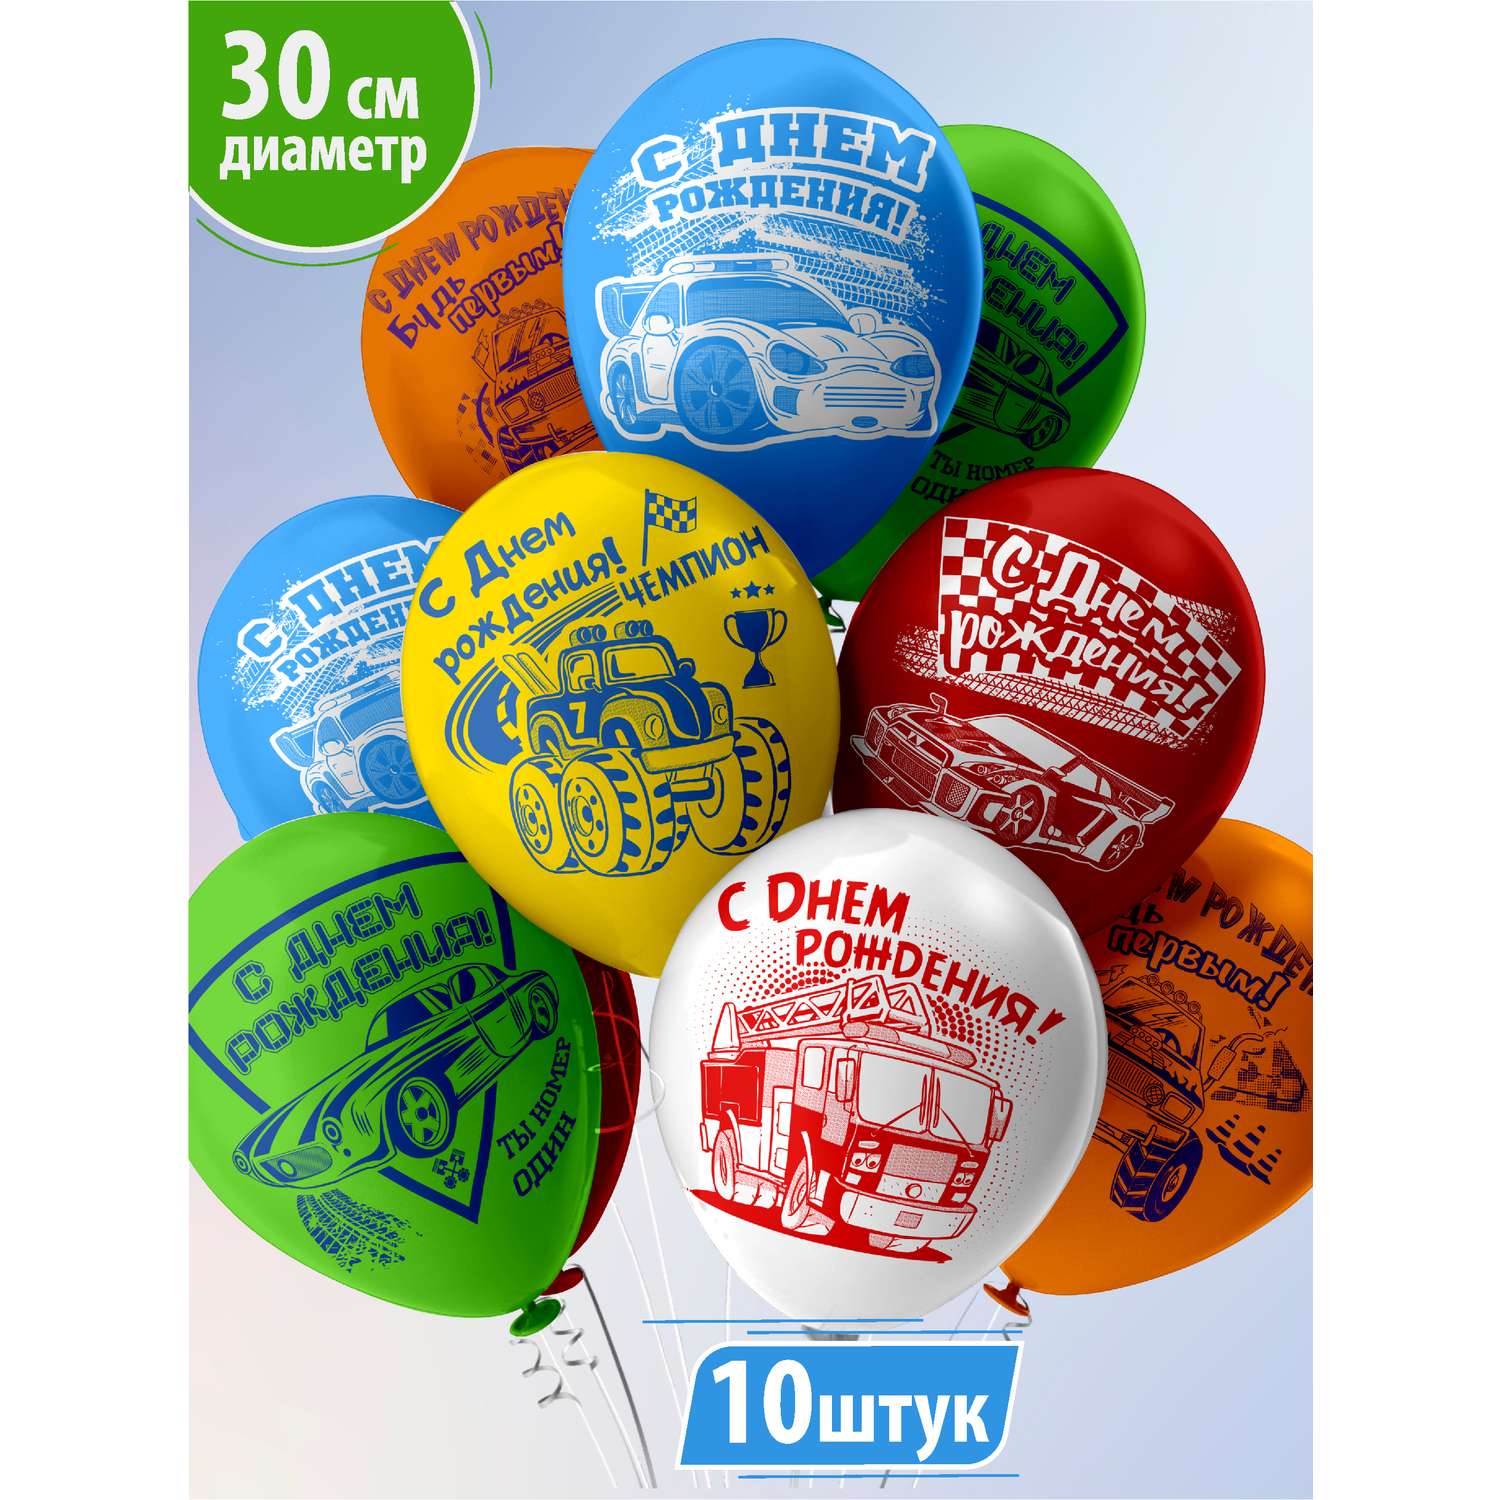 Воздушные шары для мальчика МИКРОС. Территория праздника «С днем рождения» с машинками набор 10 штук - фото 1